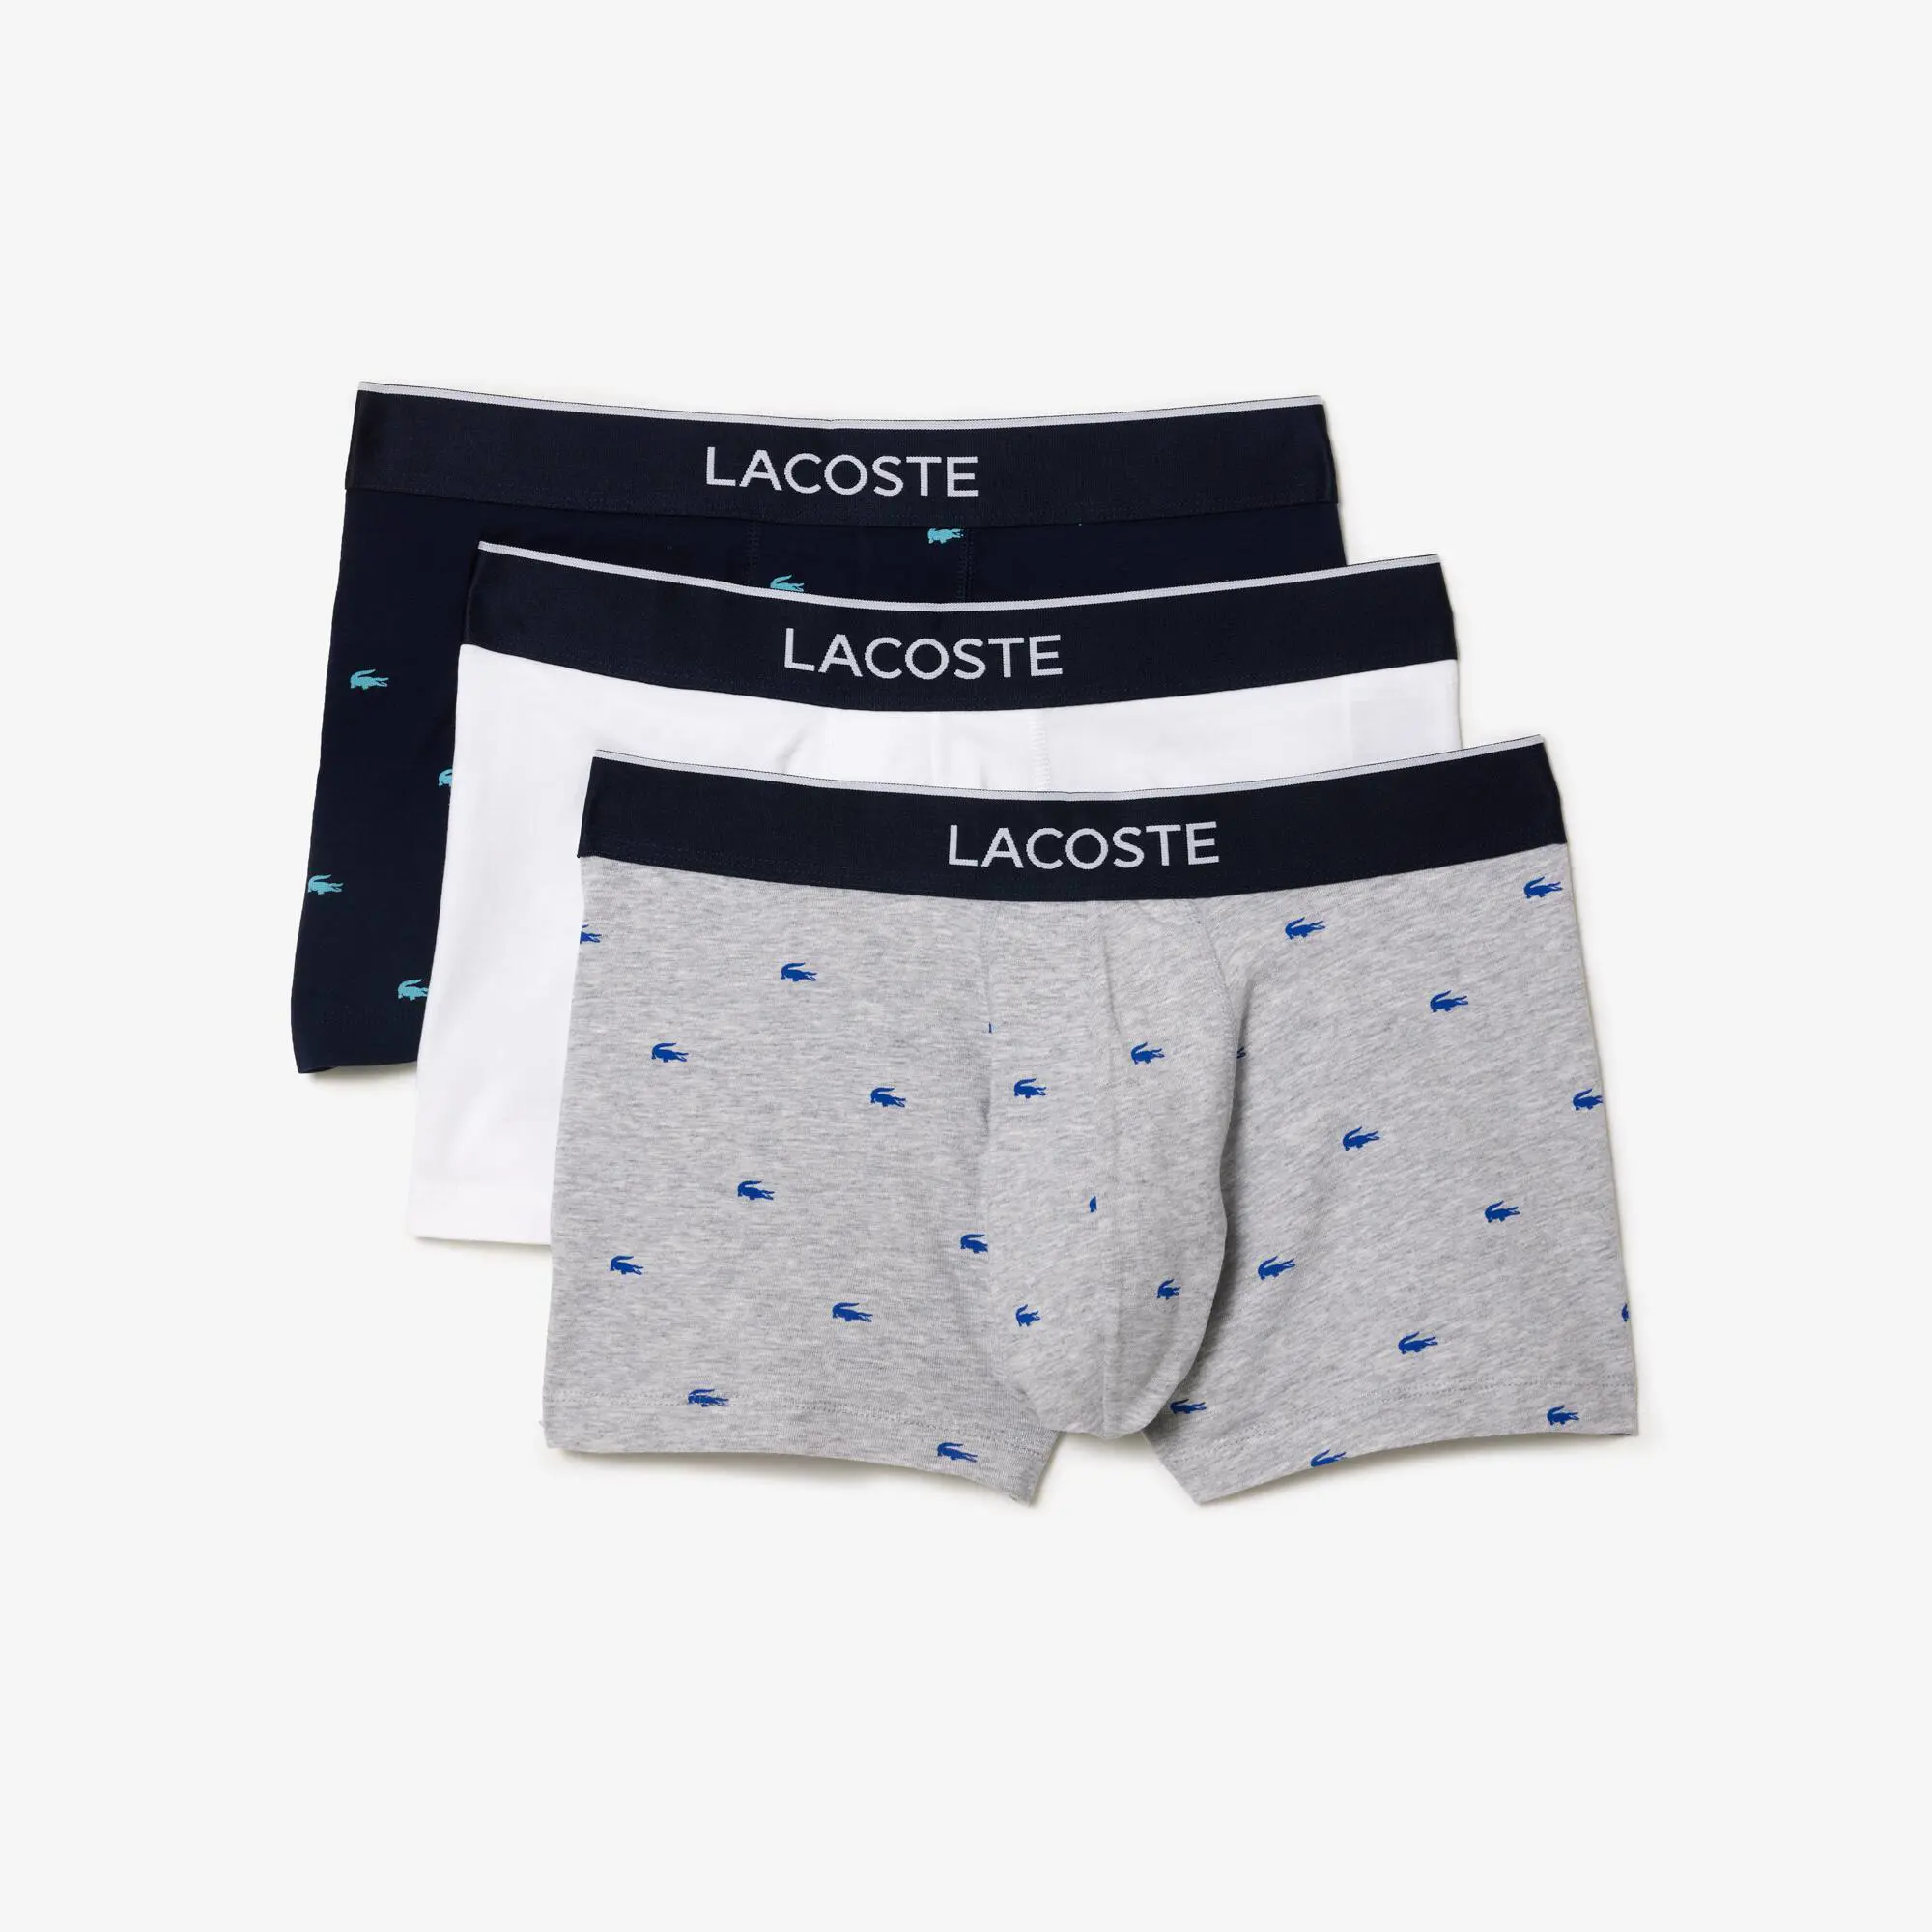 Lacoste Pack de 3 calzoncillos bóxer de hombre de estilo casual con detalles de la marca. 1